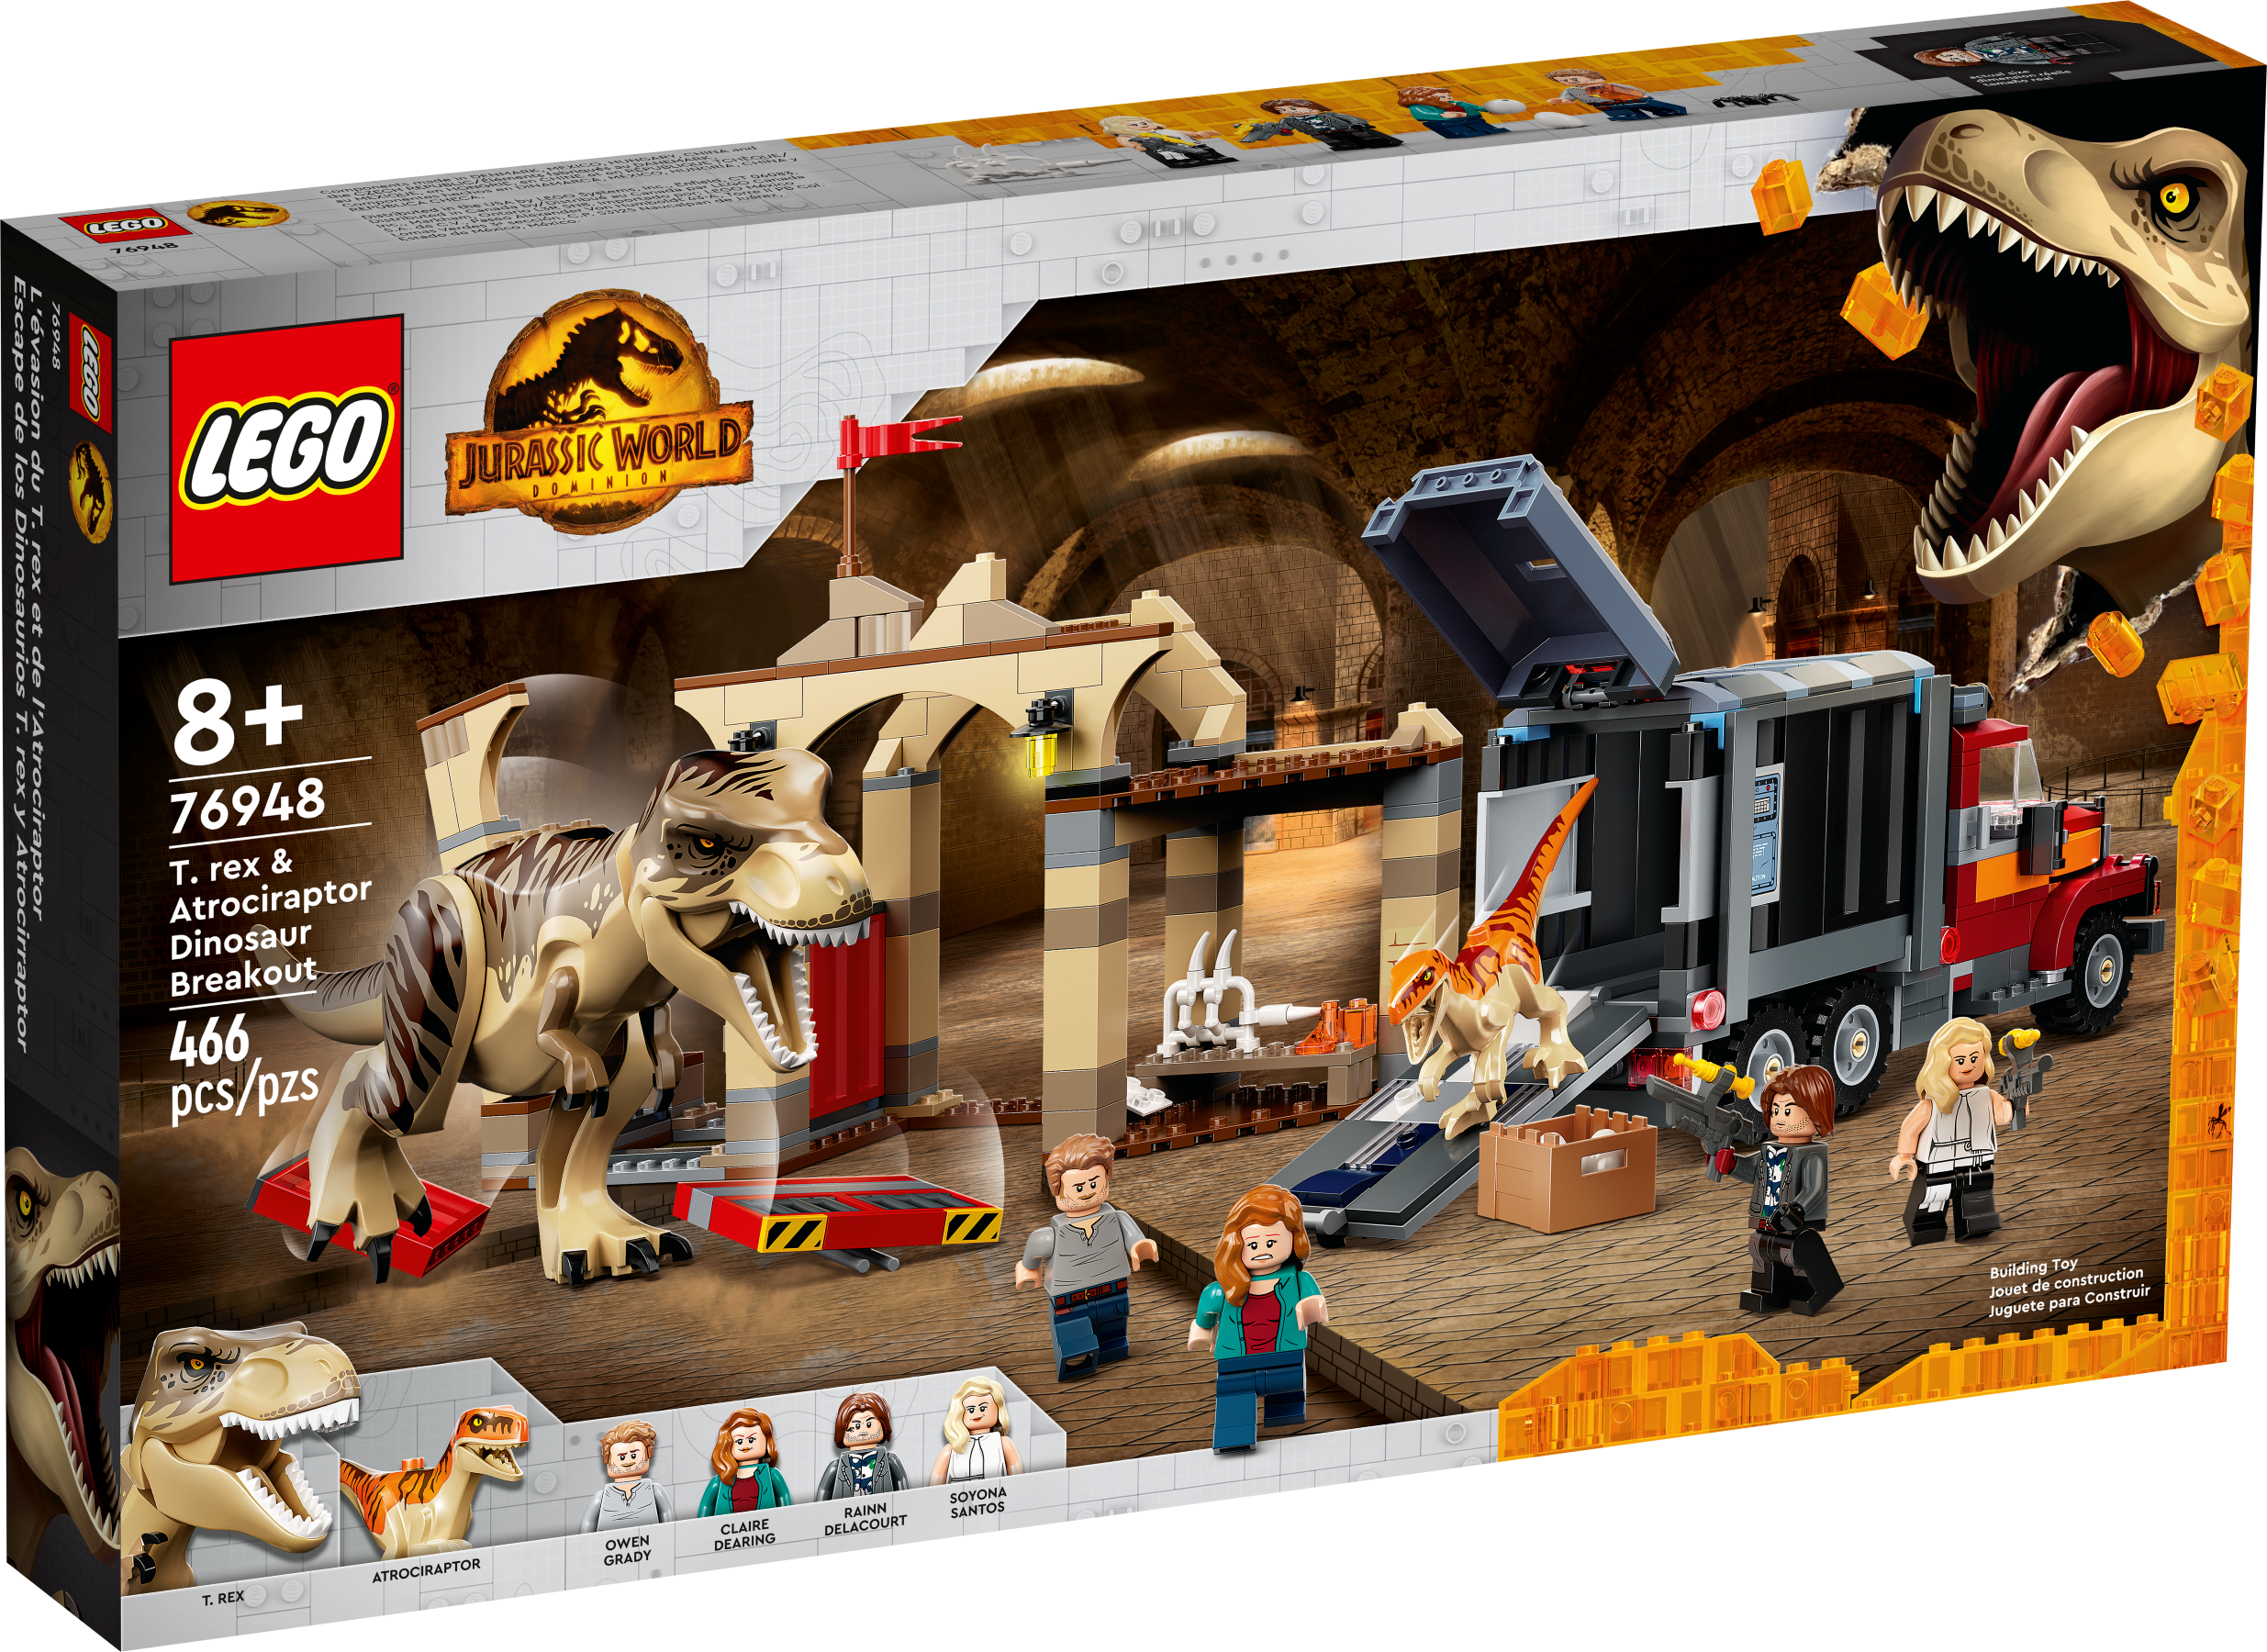  LEGO Jurassic World Brachiosaurus Discovery 76960 Jurassic Park  - Juguete de dinosaurio del 30 aniversario; con una gran figura de  dinosaurio y juguete de automóvil Jeep Wrangler construido en : Juguetes y  Juegos